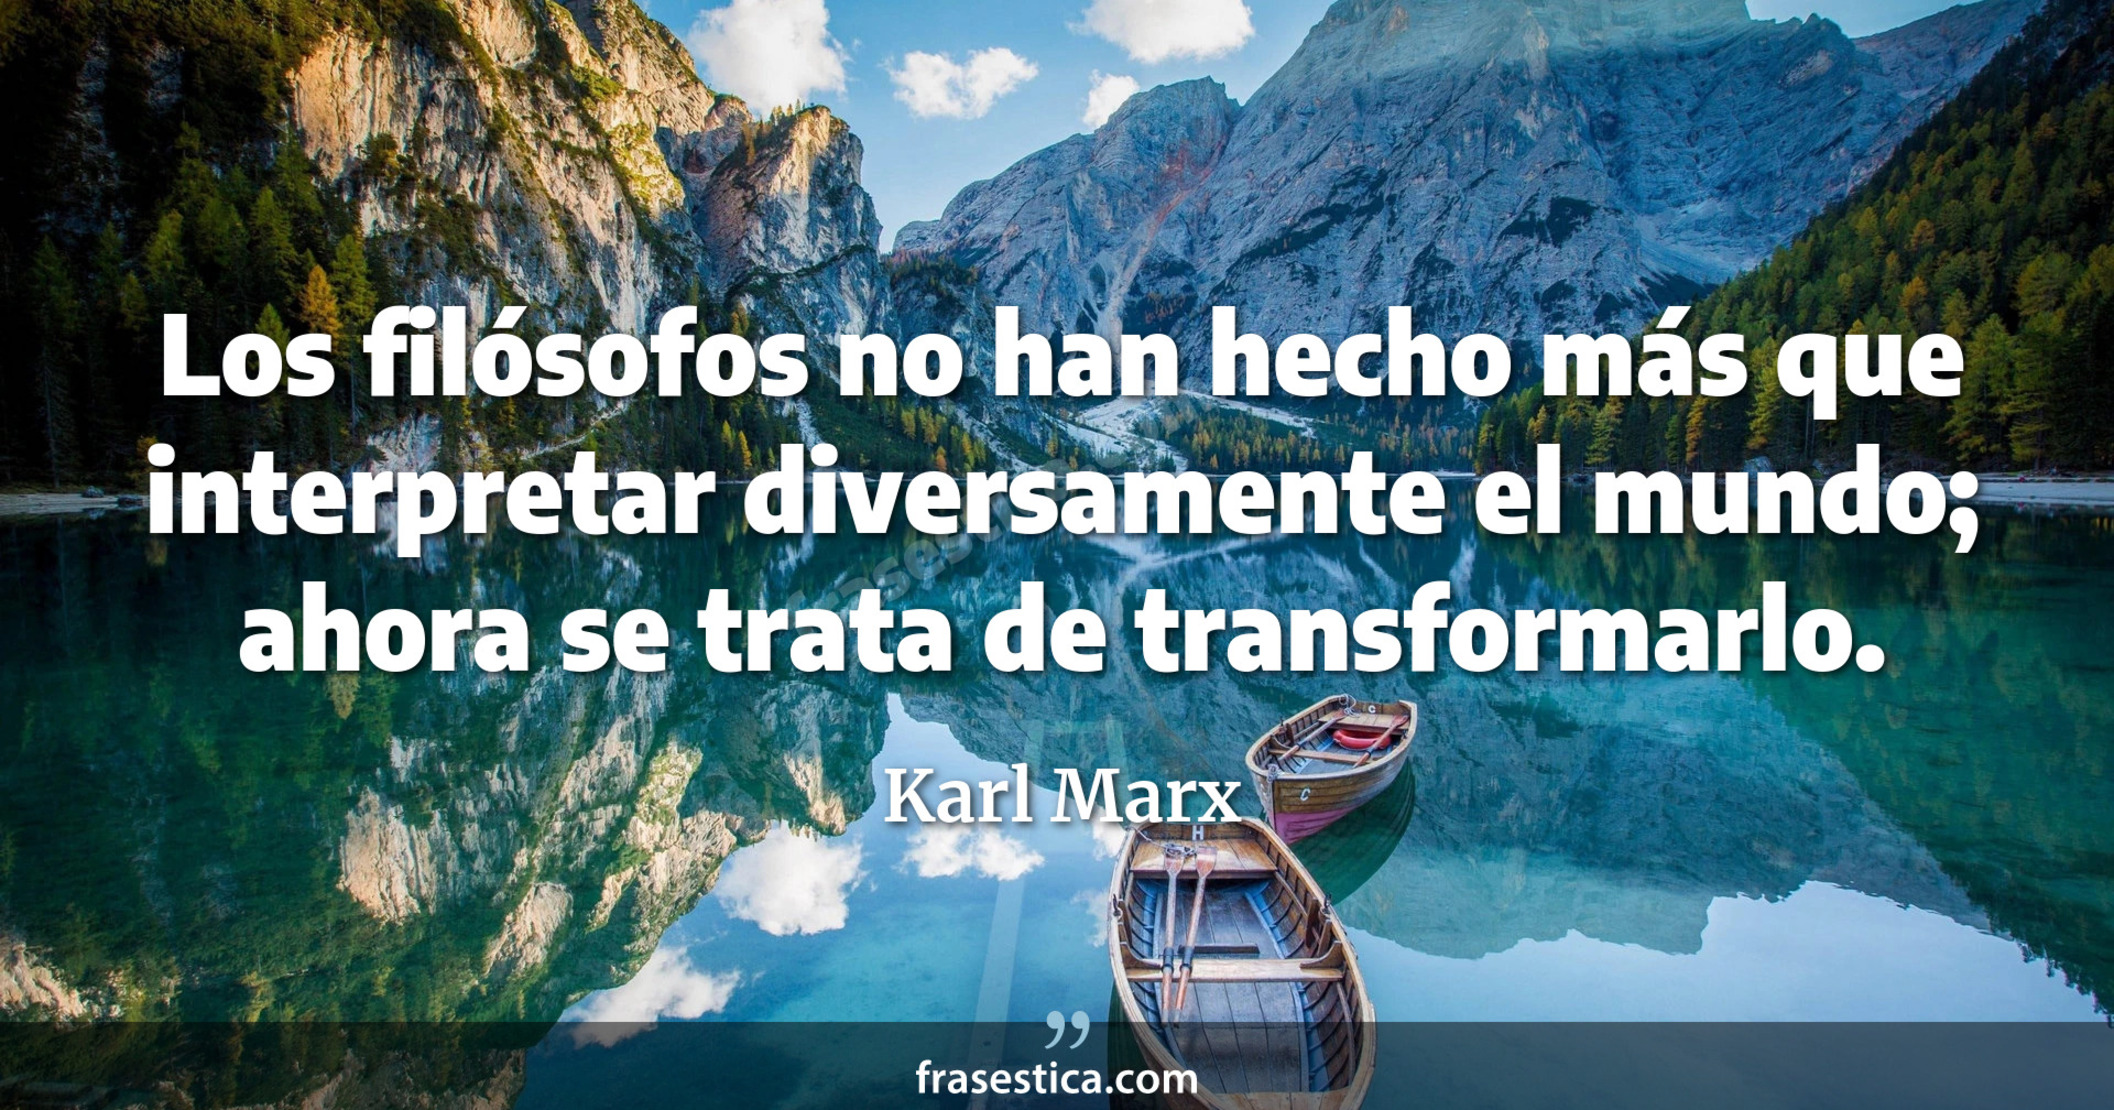 Los filósofos no han hecho más que interpretar diversamente el mundo; ahora se trata de transformarlo. - Karl Marx